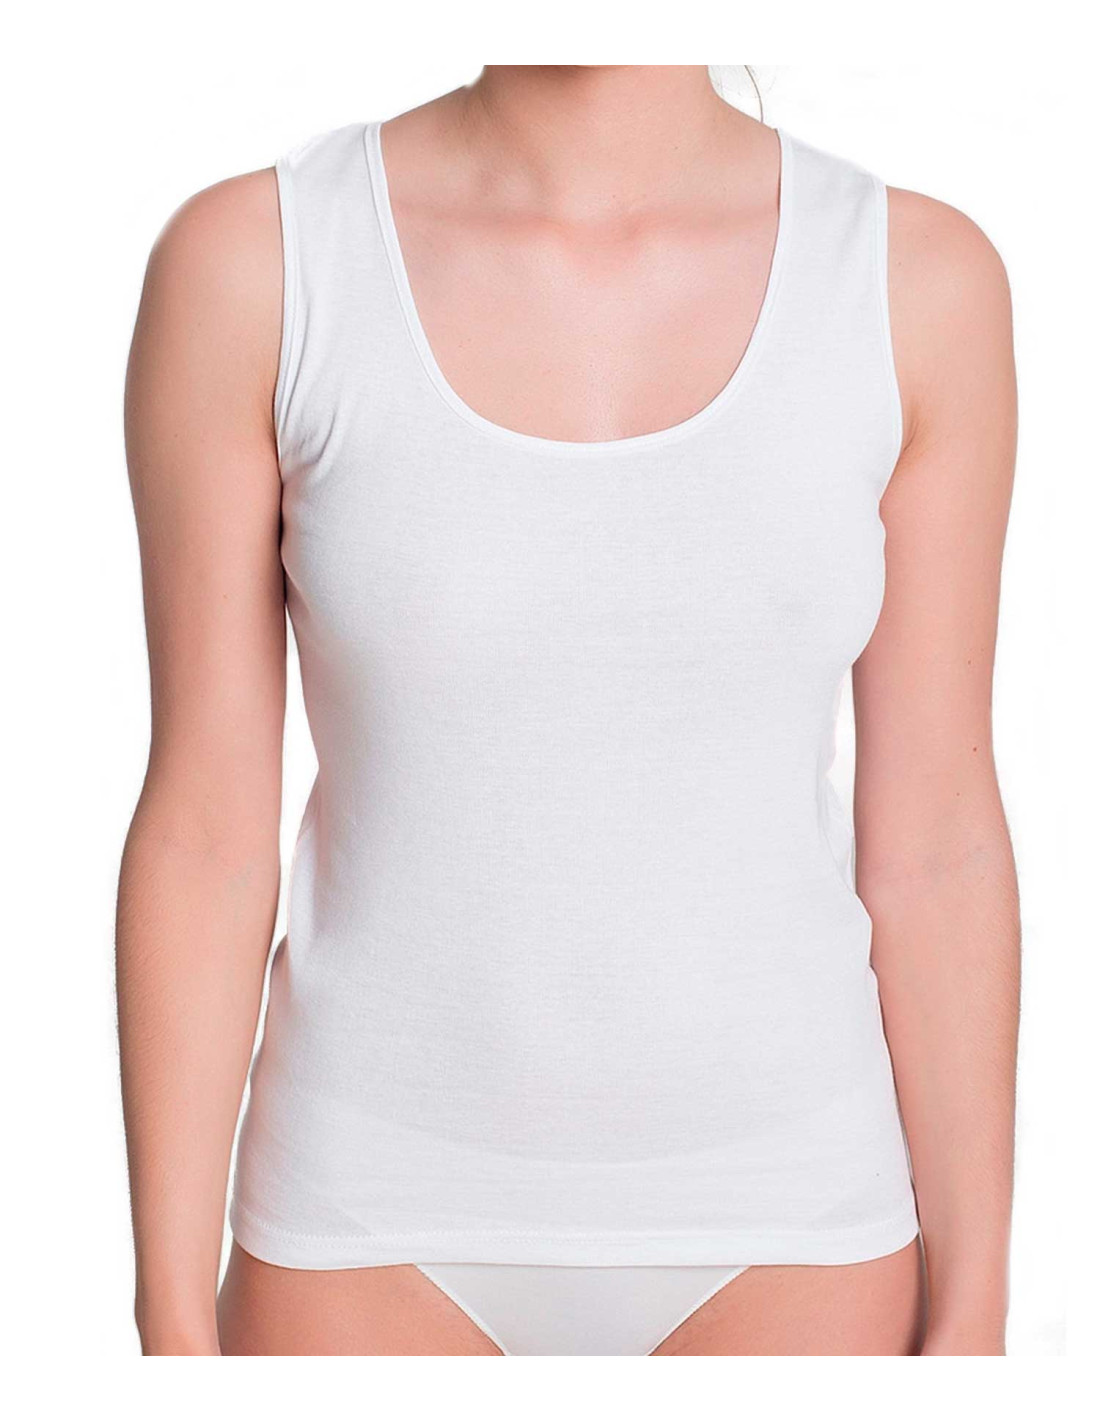 Camiseta interior mujer reductora sin costuras con tirante ancho y diseño  rejilla